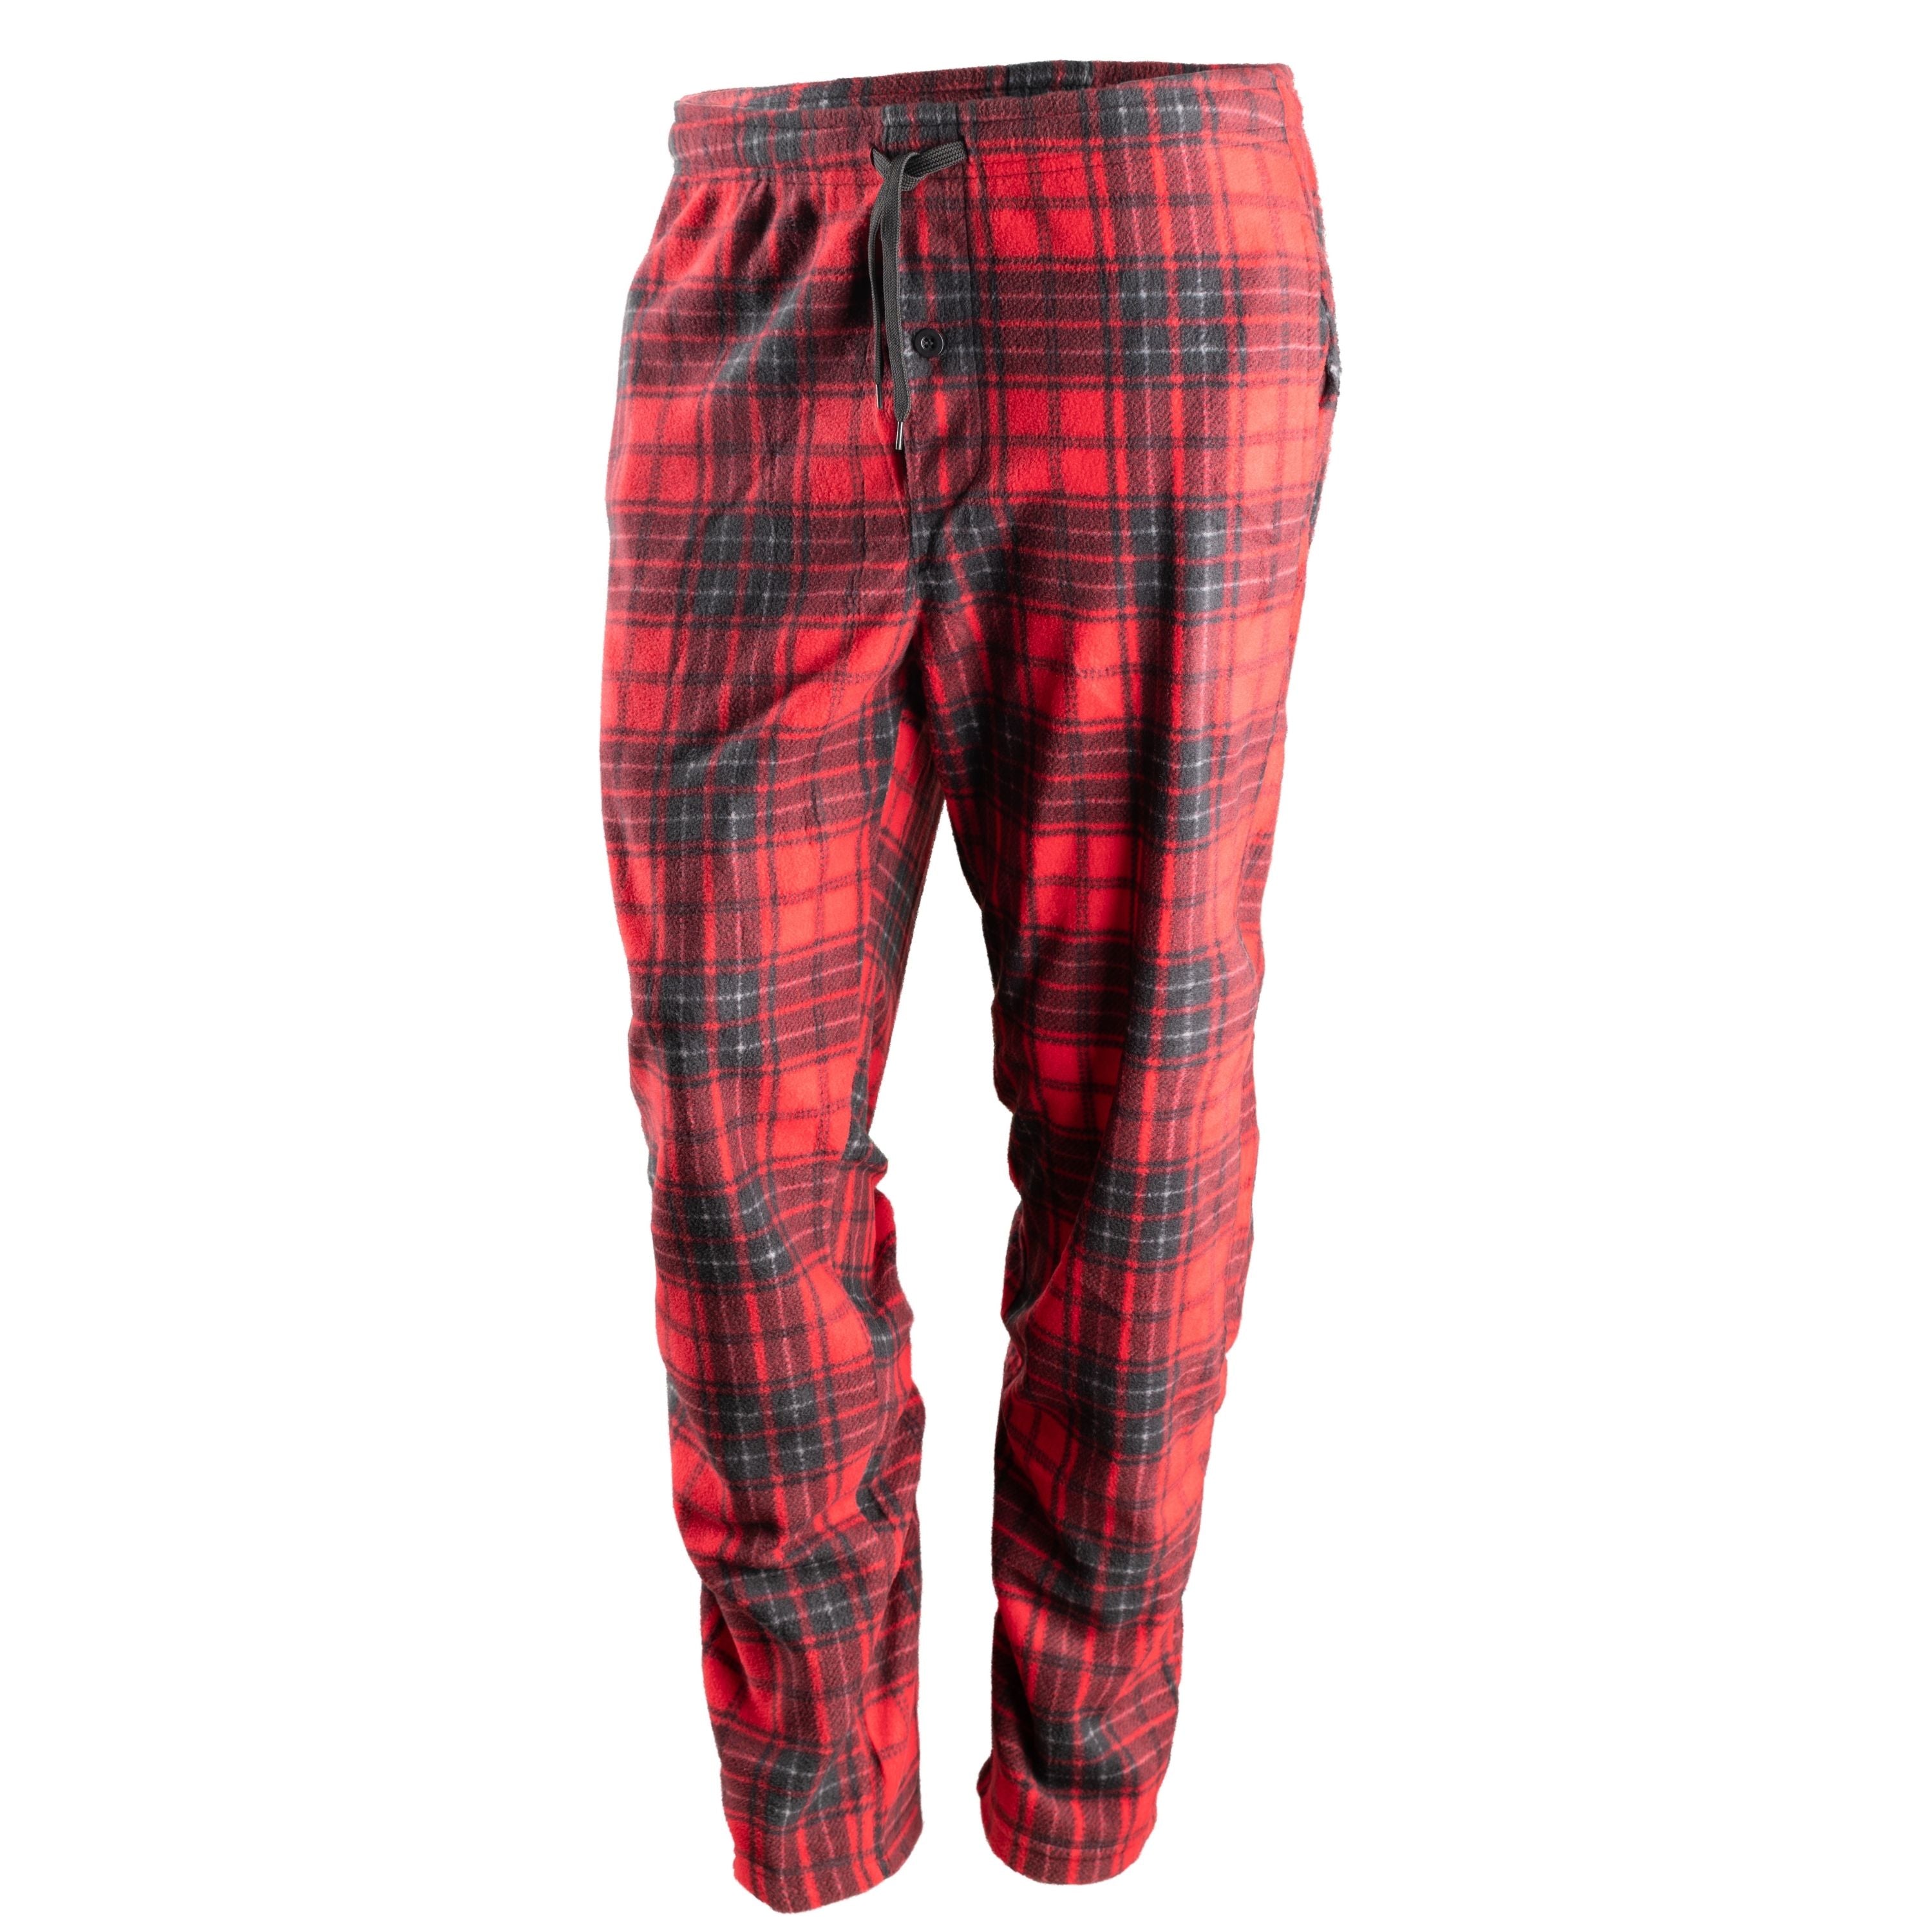 Pantalon pyjama à carreaux "Wood Camp" - Homme||"Wood Camp" Fleece lounge pants - Men's